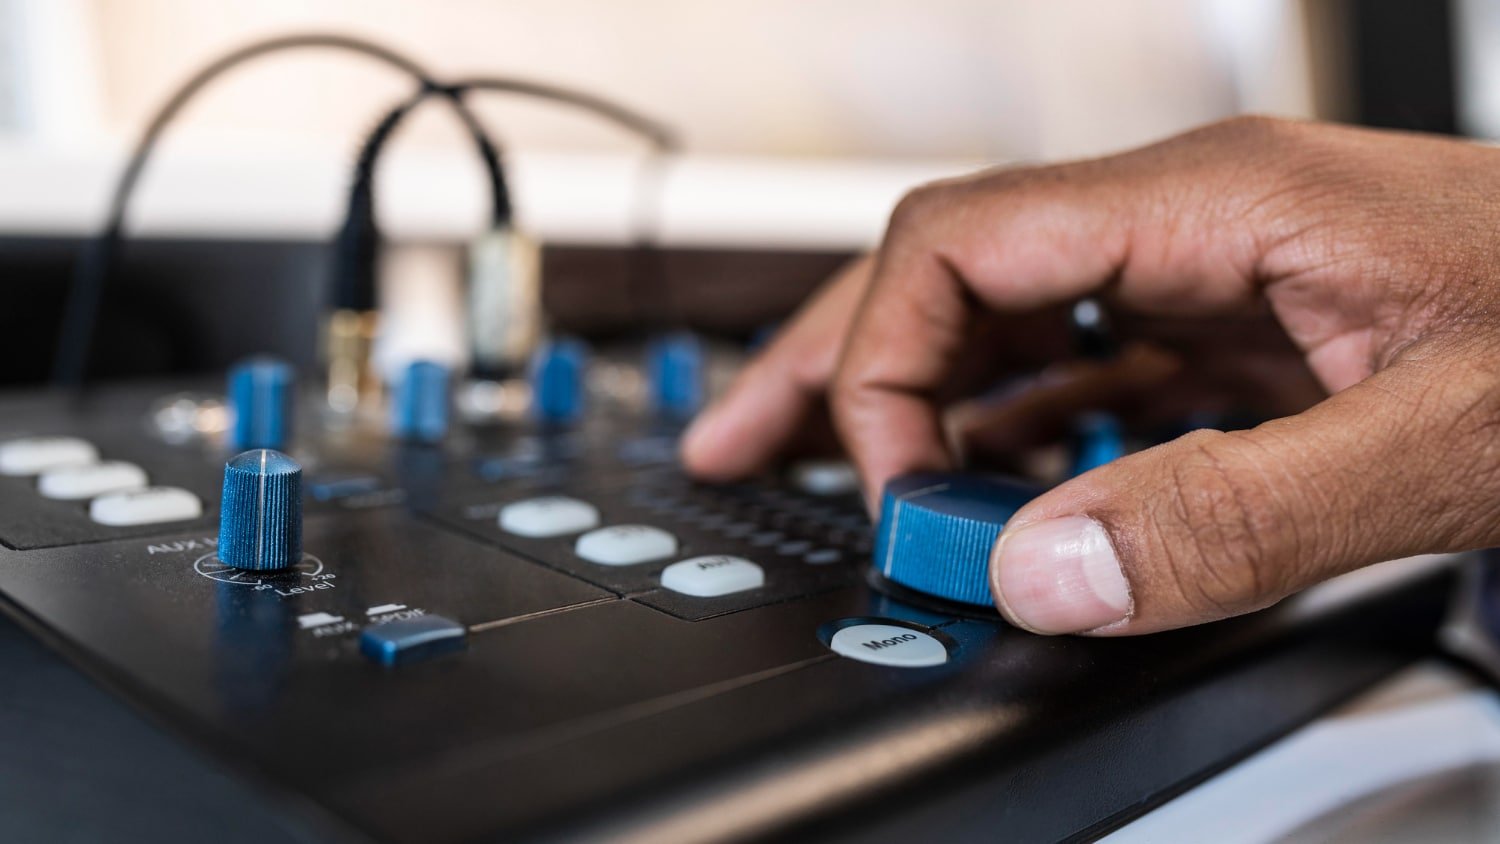 Professional Audio Equipment by PreSonus